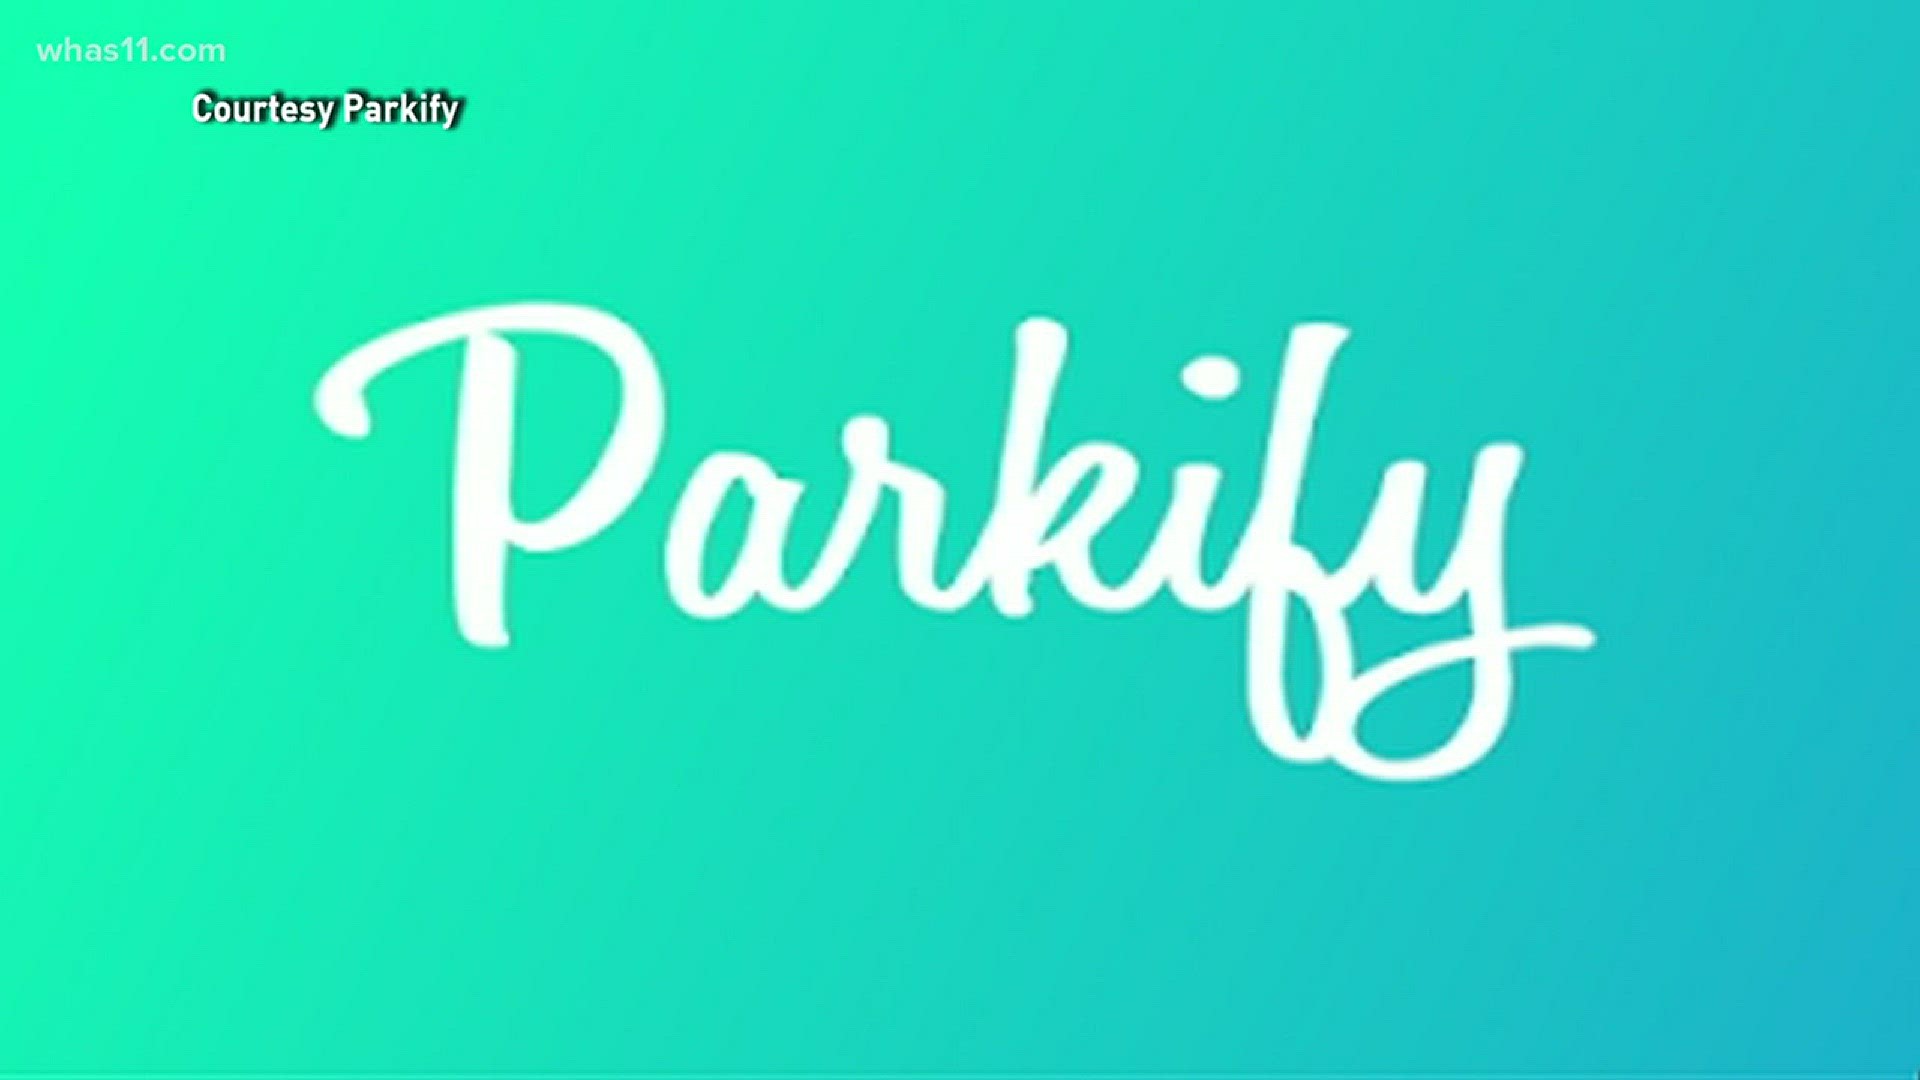 App of the week: Parkify